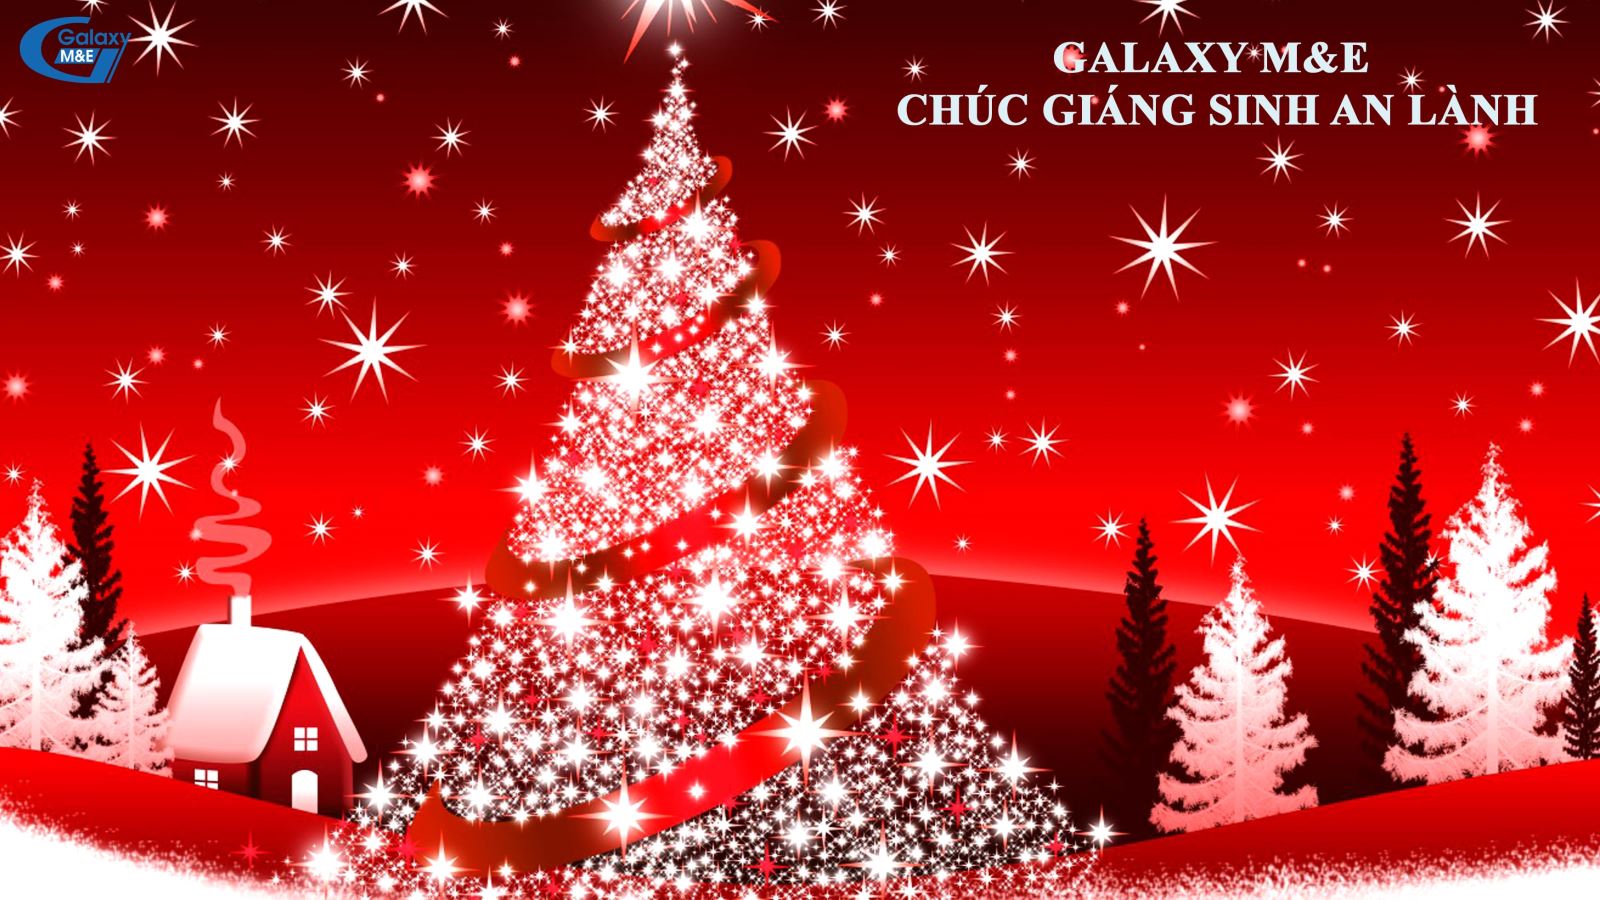 Galaxy M&E cầu chúc Giáng sinh an lành sẽ đến với mọi nhà.